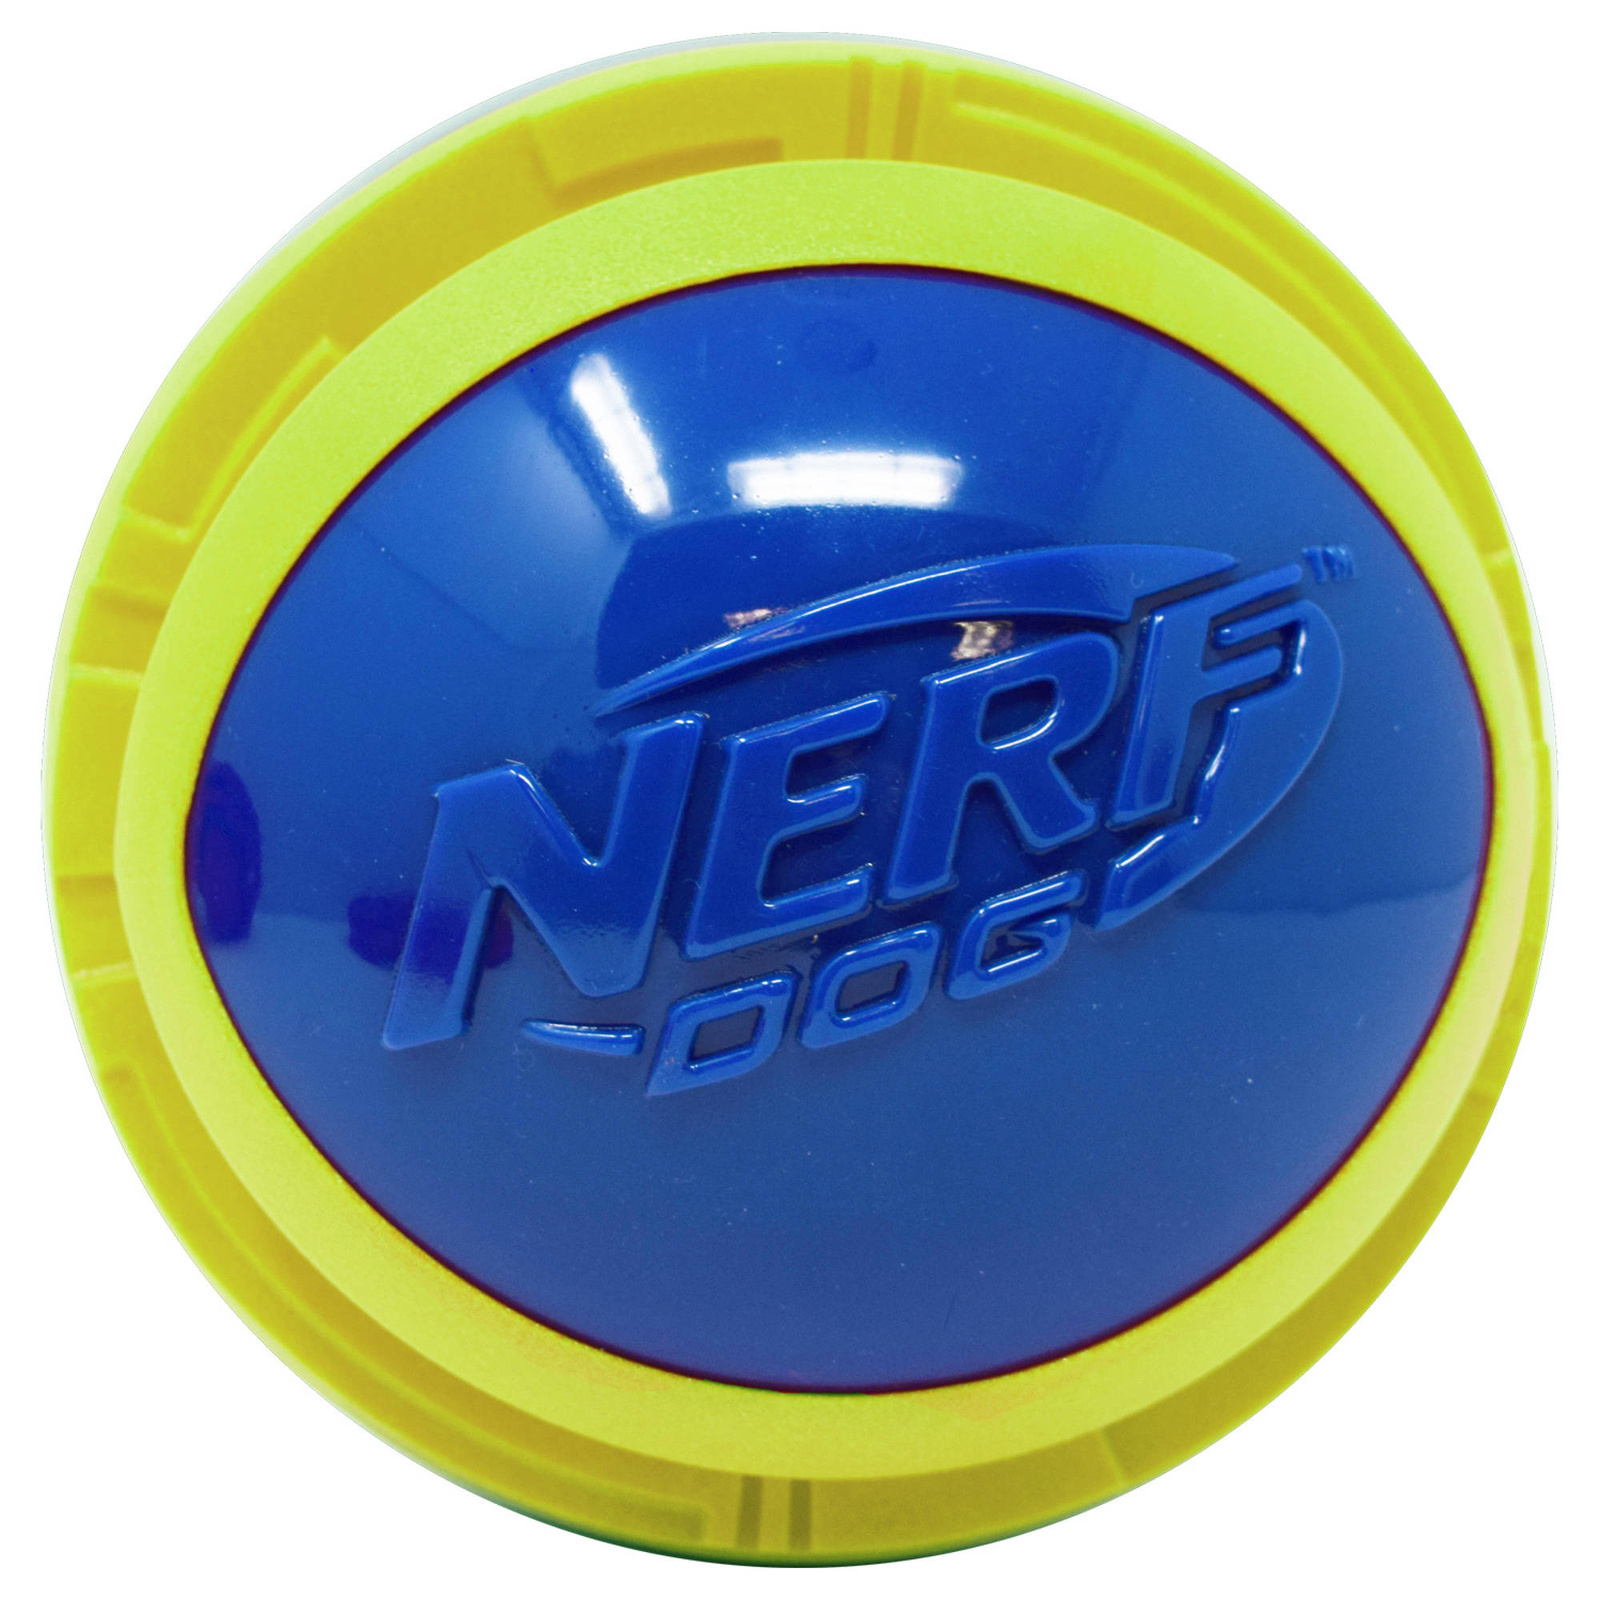 Nerf Nerf мяч из вспененной резины и термопластичной резины,14 см (серия Мегатон), (синий/зеленый) (390 г) nerf nerf снаряд из вспененной резины и термопластичной резины 30 см серия мегатон синий зеленый 290 г